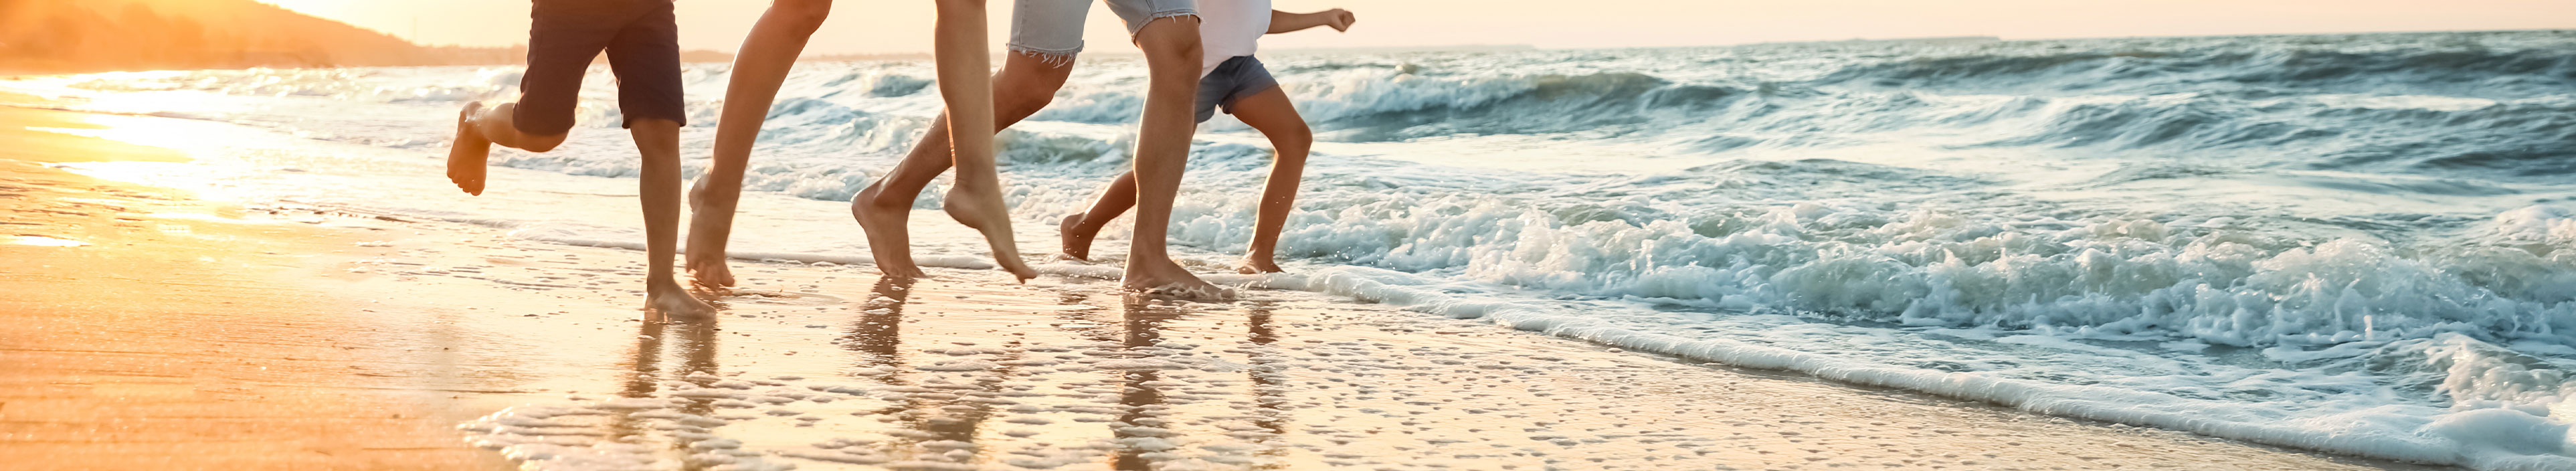 Eine Familie läuft an einem Strand während des Sonnenuntergangs.